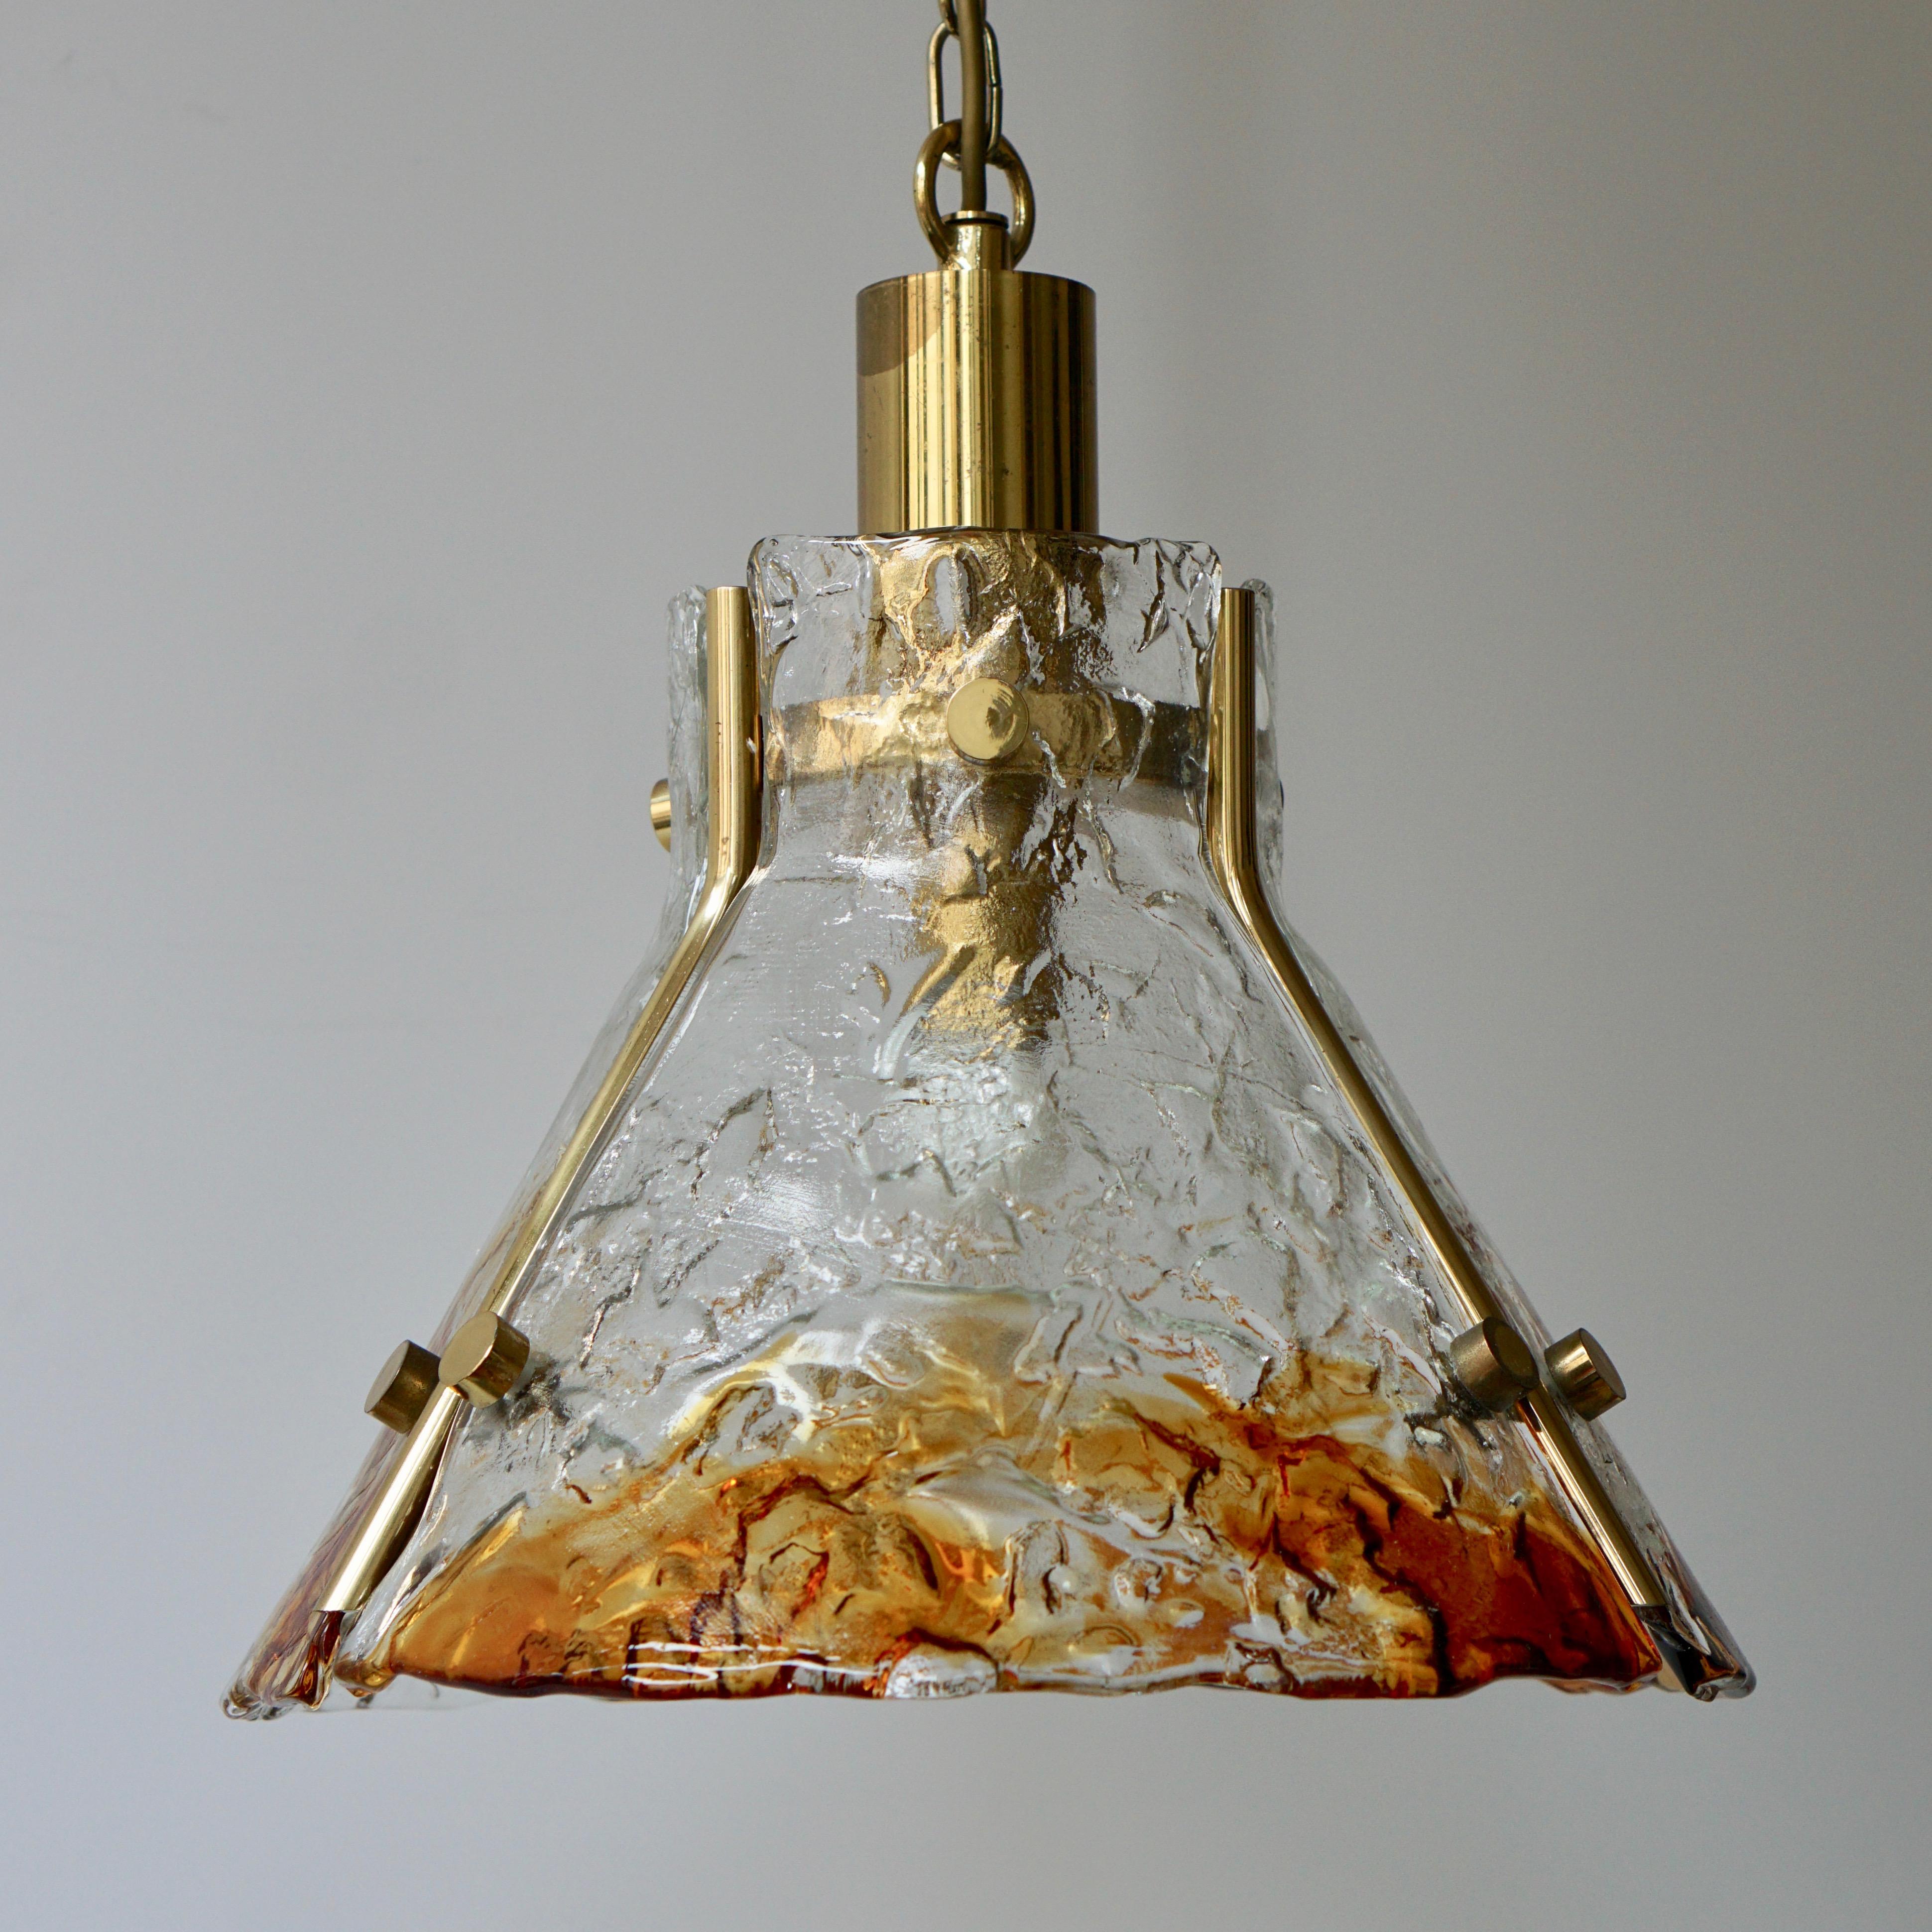 Lampe pendante en verre de Murano et laiton.
Mesures : Diamètre 38 cm.
Hauteur de l'appareil 37 cm.
Hauteur totale avec la chaîne 150 cm.